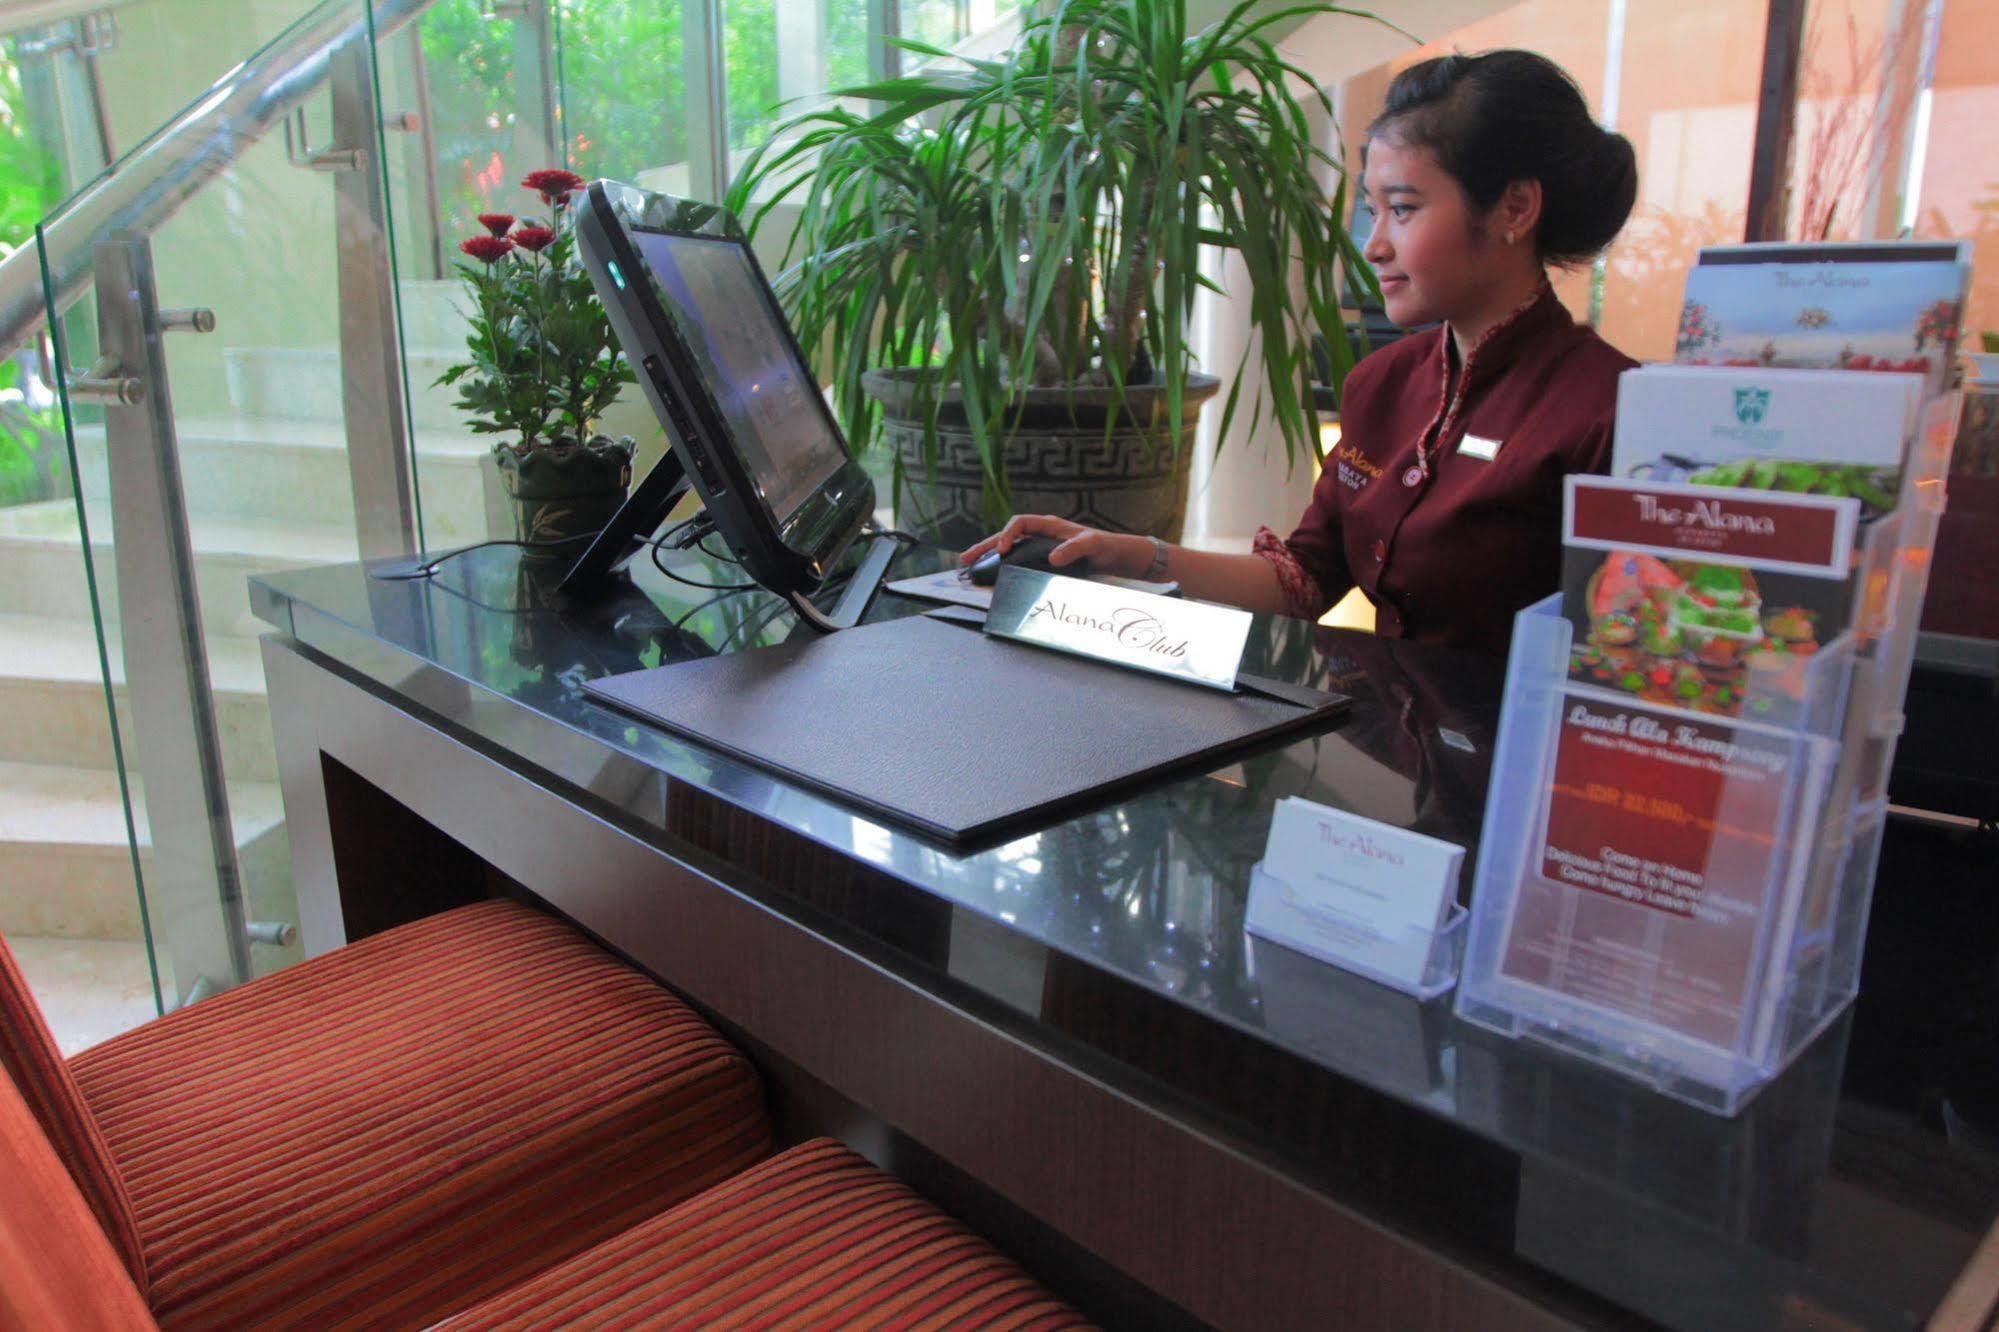 The Alana Surabaya Ξενοδοχείο Εξωτερικό φωτογραφία